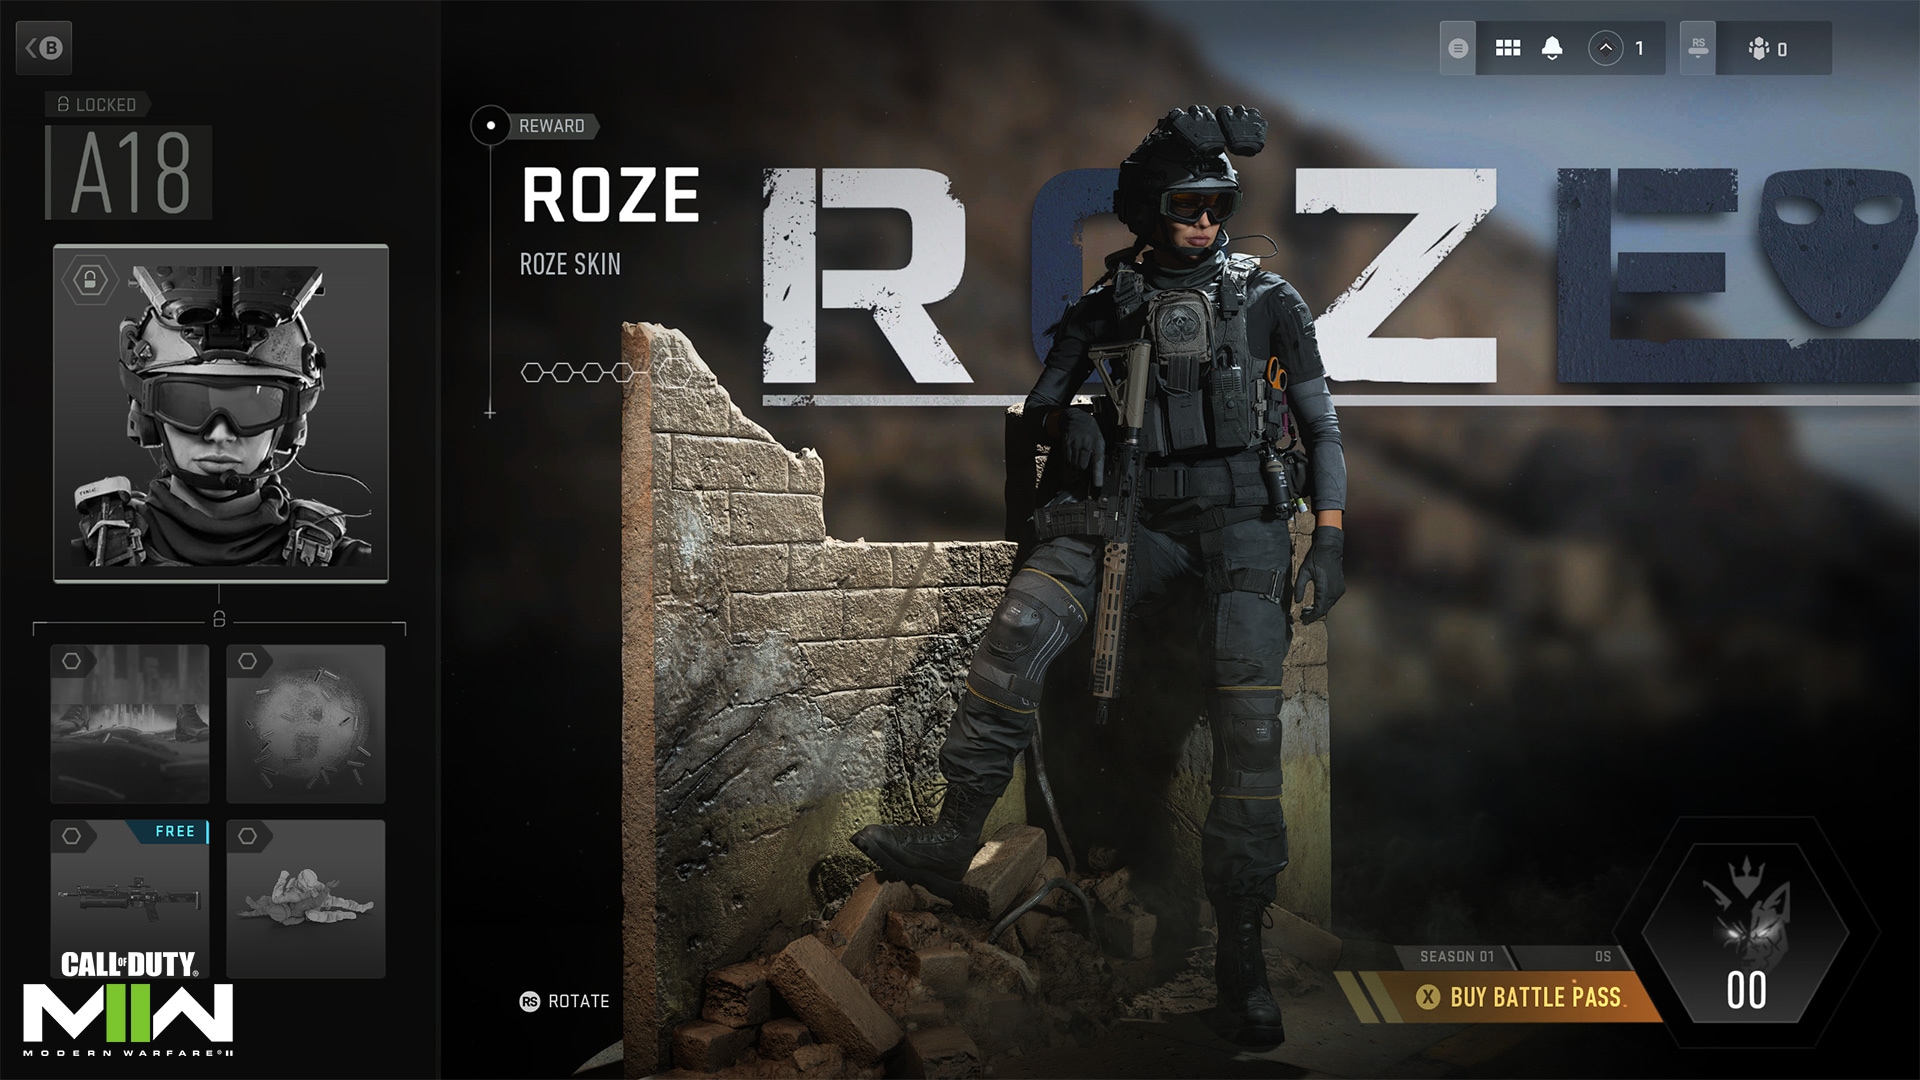 Call of Duty: Warzone 2.0 tem requisito de sistema revelado